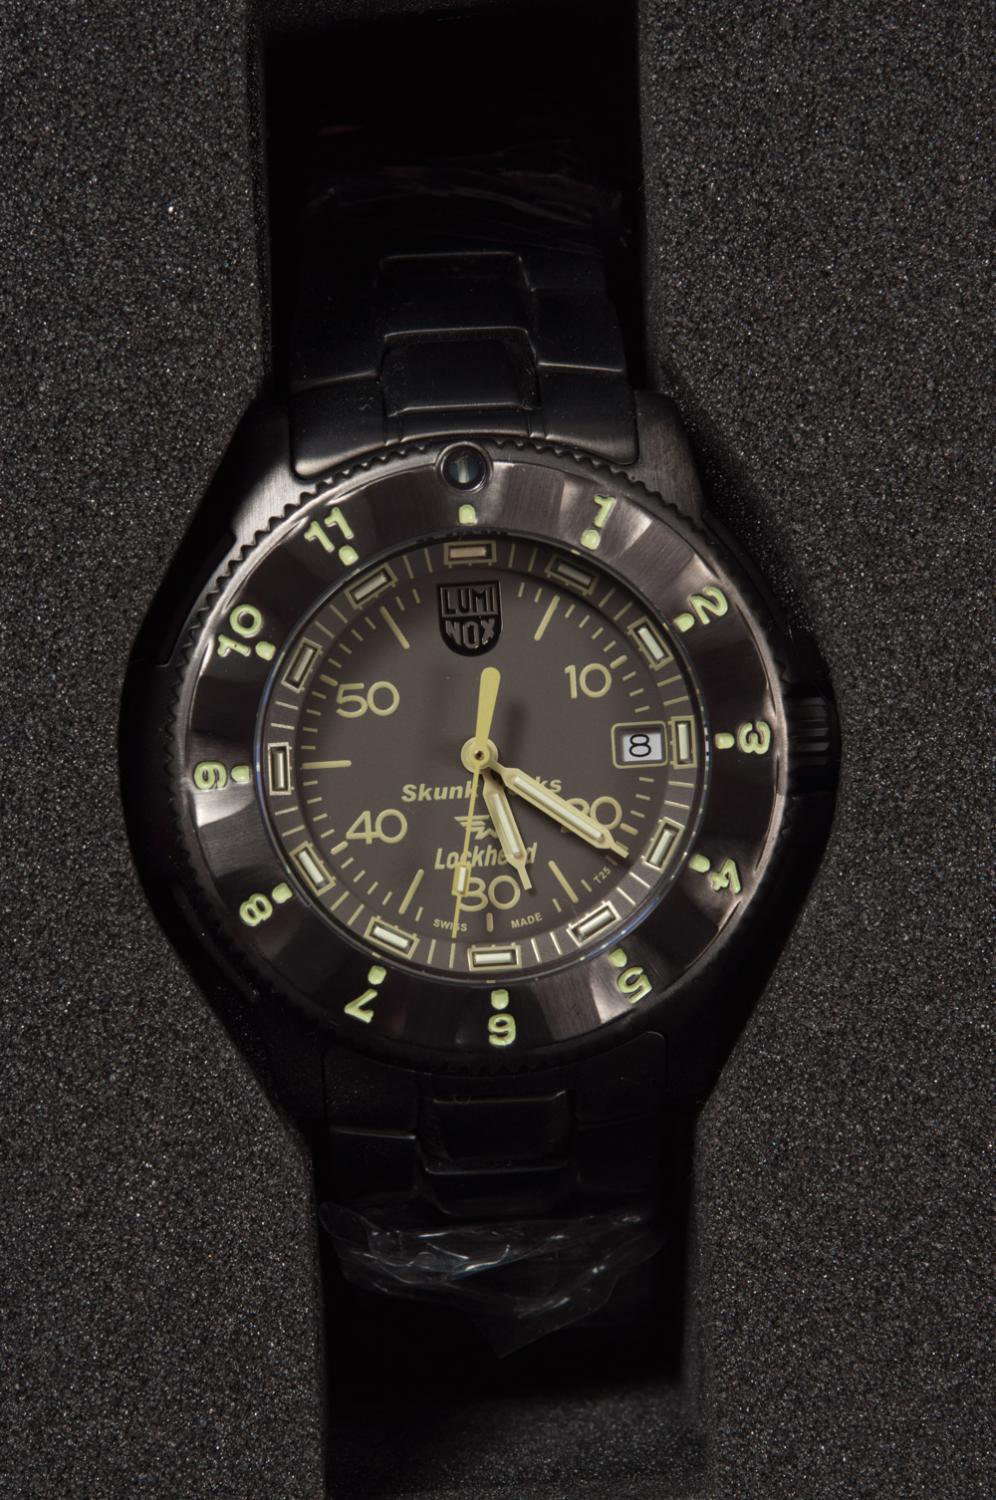 バズリクソンズ(BUZZ RICKSON'S)×ルミノックス 腕時計 SKUNK WORKS WRIST WATCH 通販正規取扱 | ハーレムストア